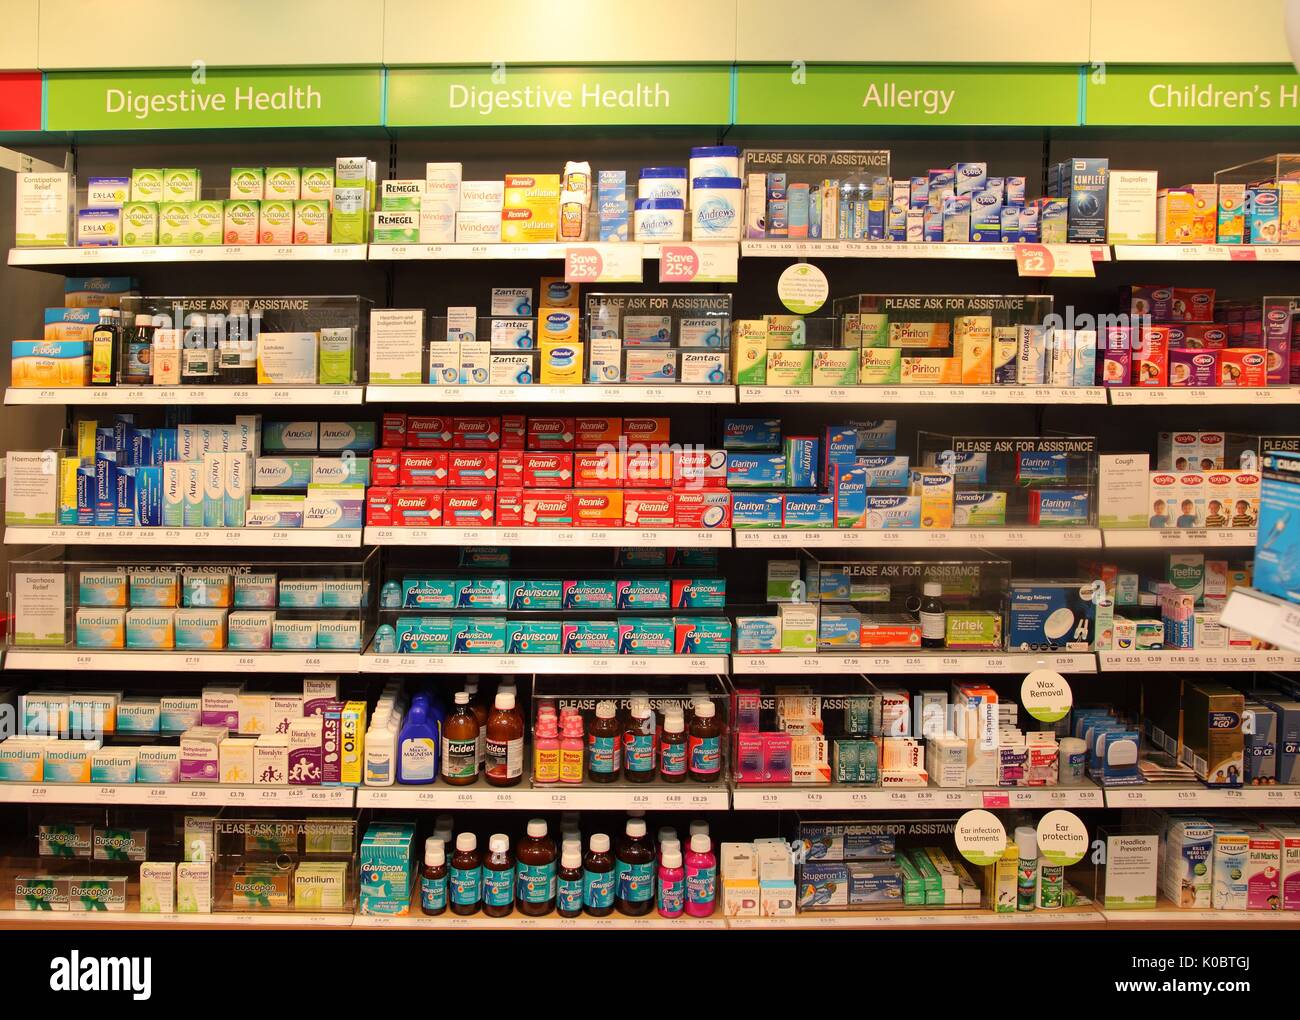 Paket von Gaviscon Pfefferminz-Aroma-Tabletten auf weißem Hintergrund  Stockfotografie - Alamy